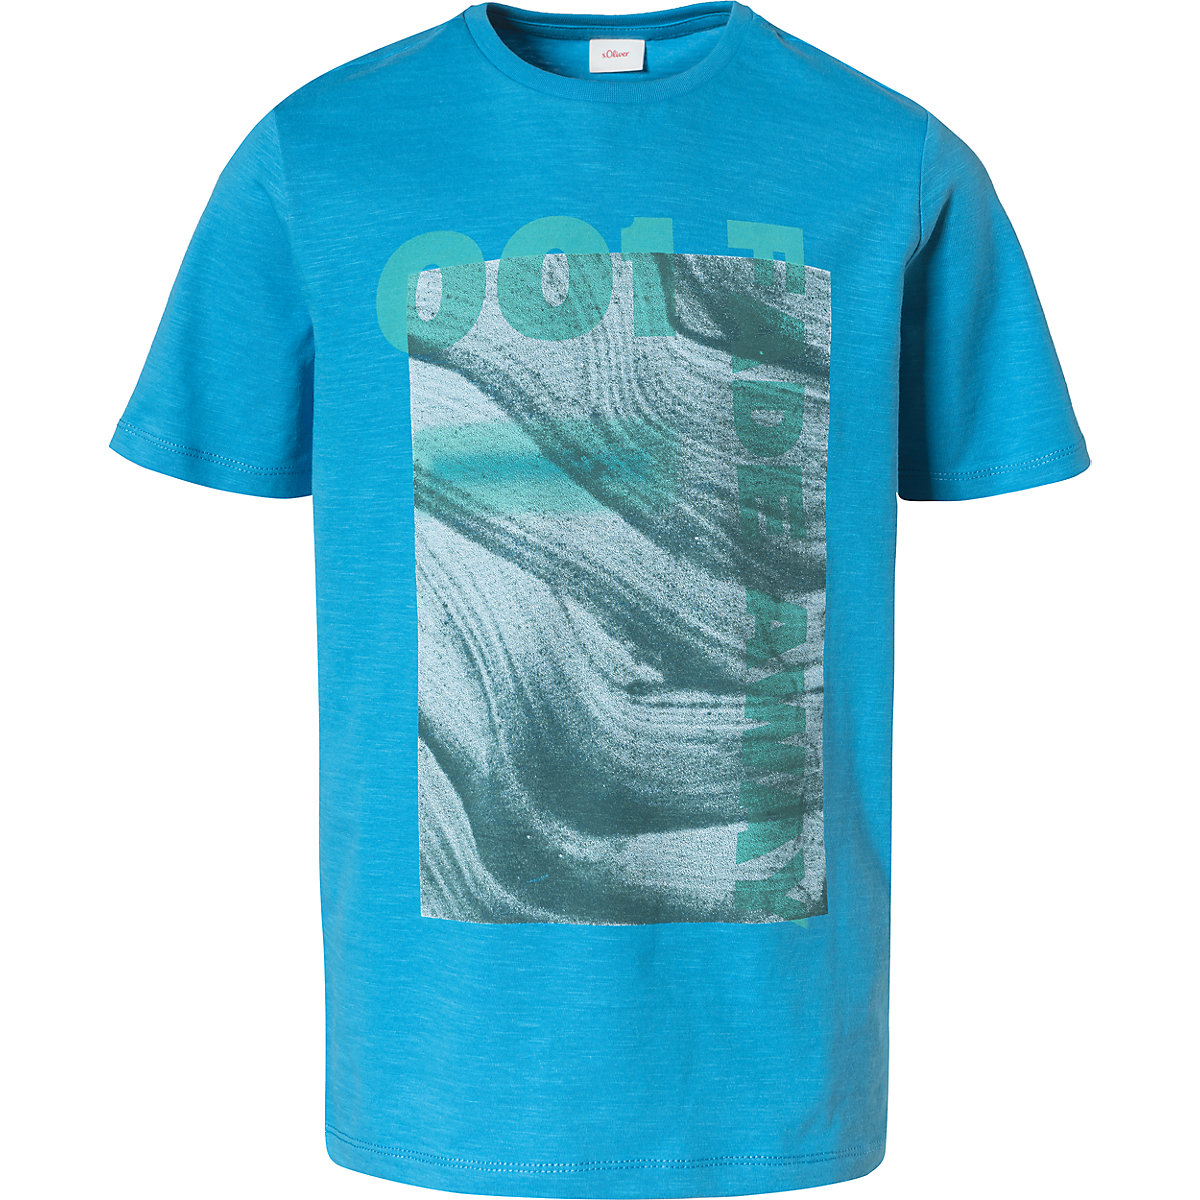 s.Oliver T-Shirt für Jungen blau/grün